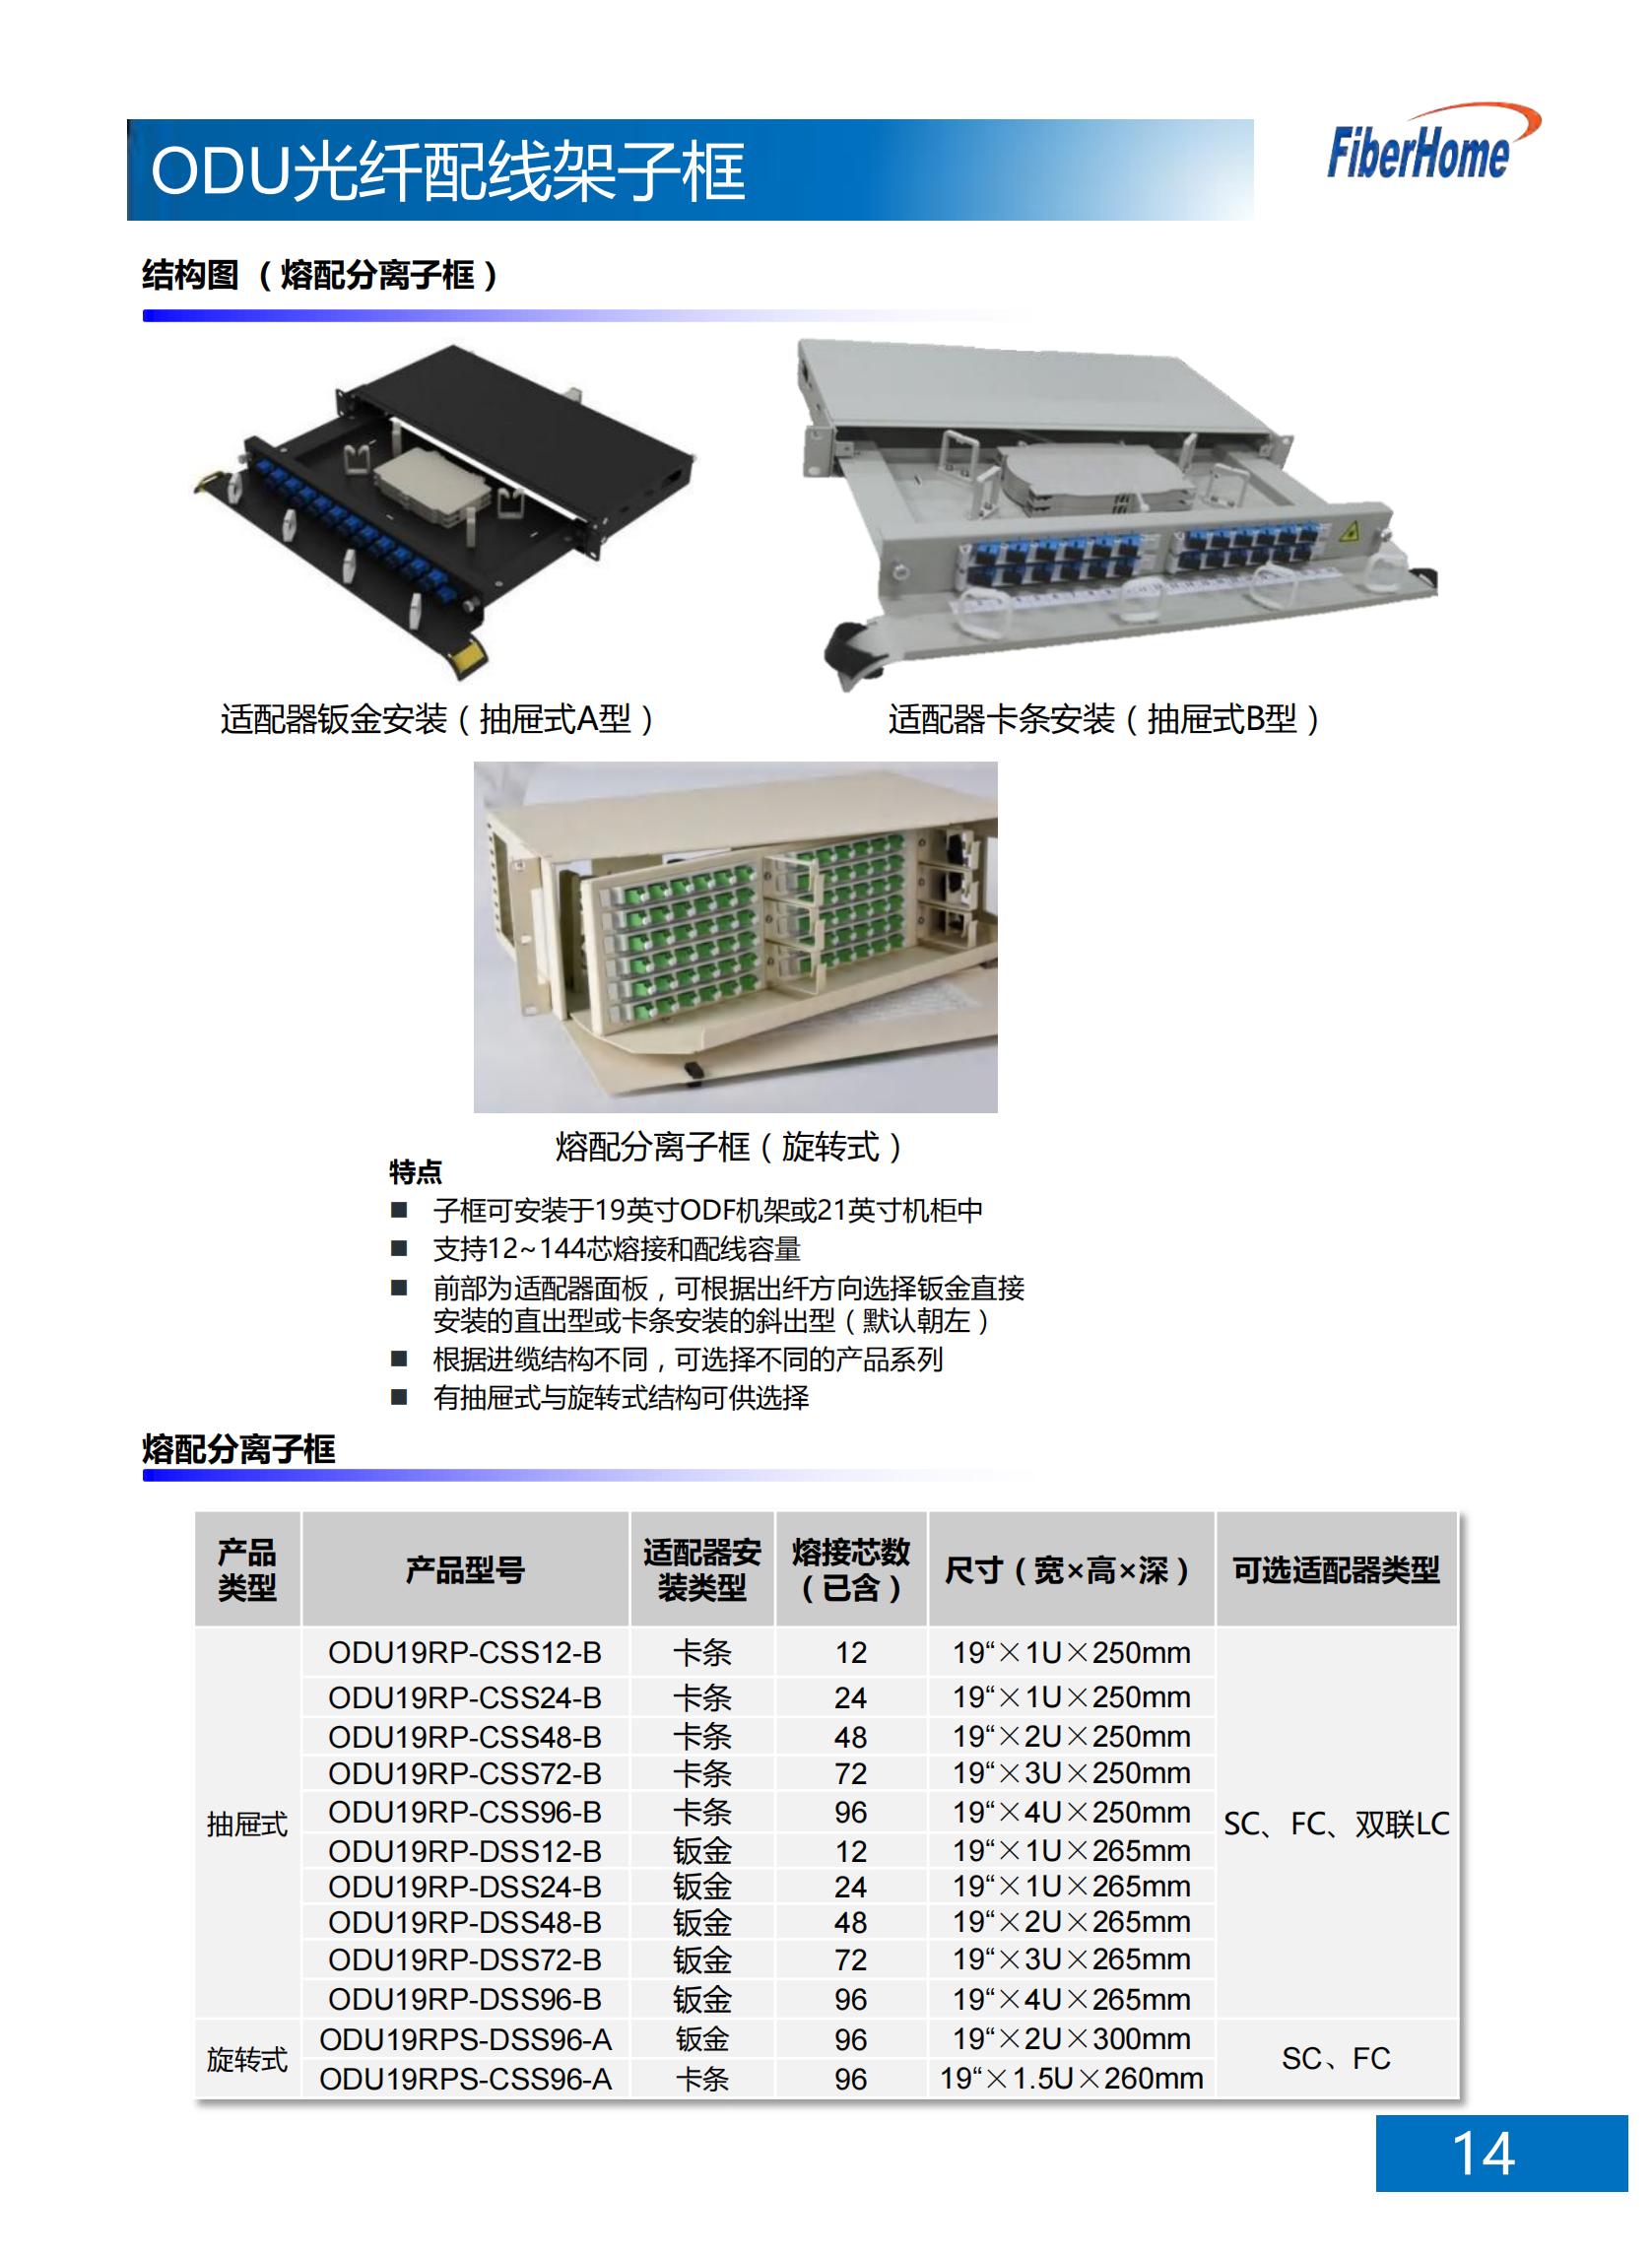 24芯 ODU光纤配线架子框 ODU19T-A24-B-FC （含12芯FC熔配一体化单元*2）